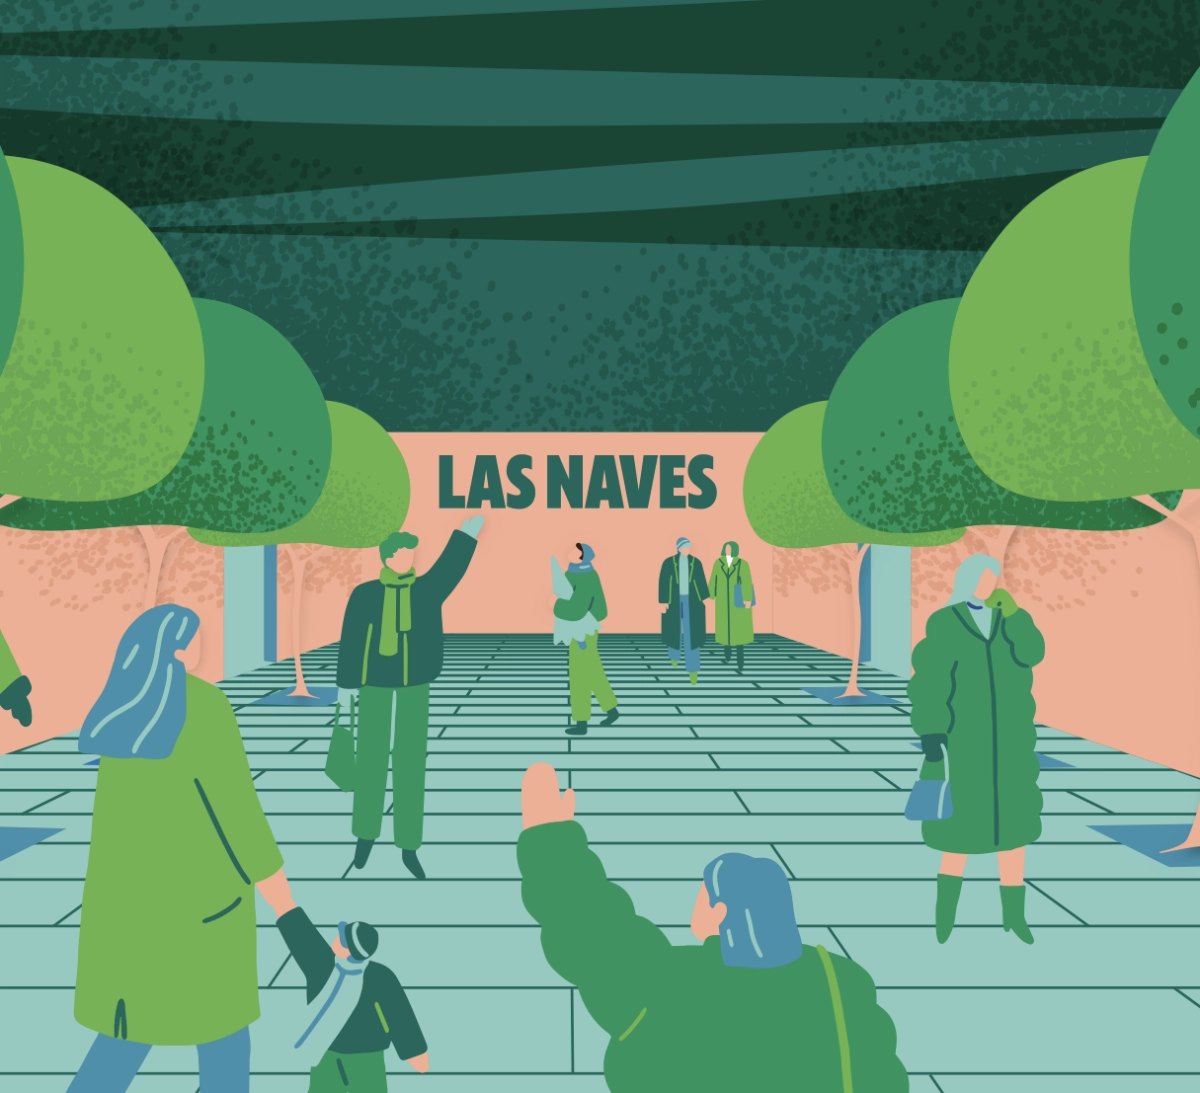 Ilustración con figura humanas paseando entre árboles con el logotipo de Las Naves al fondo